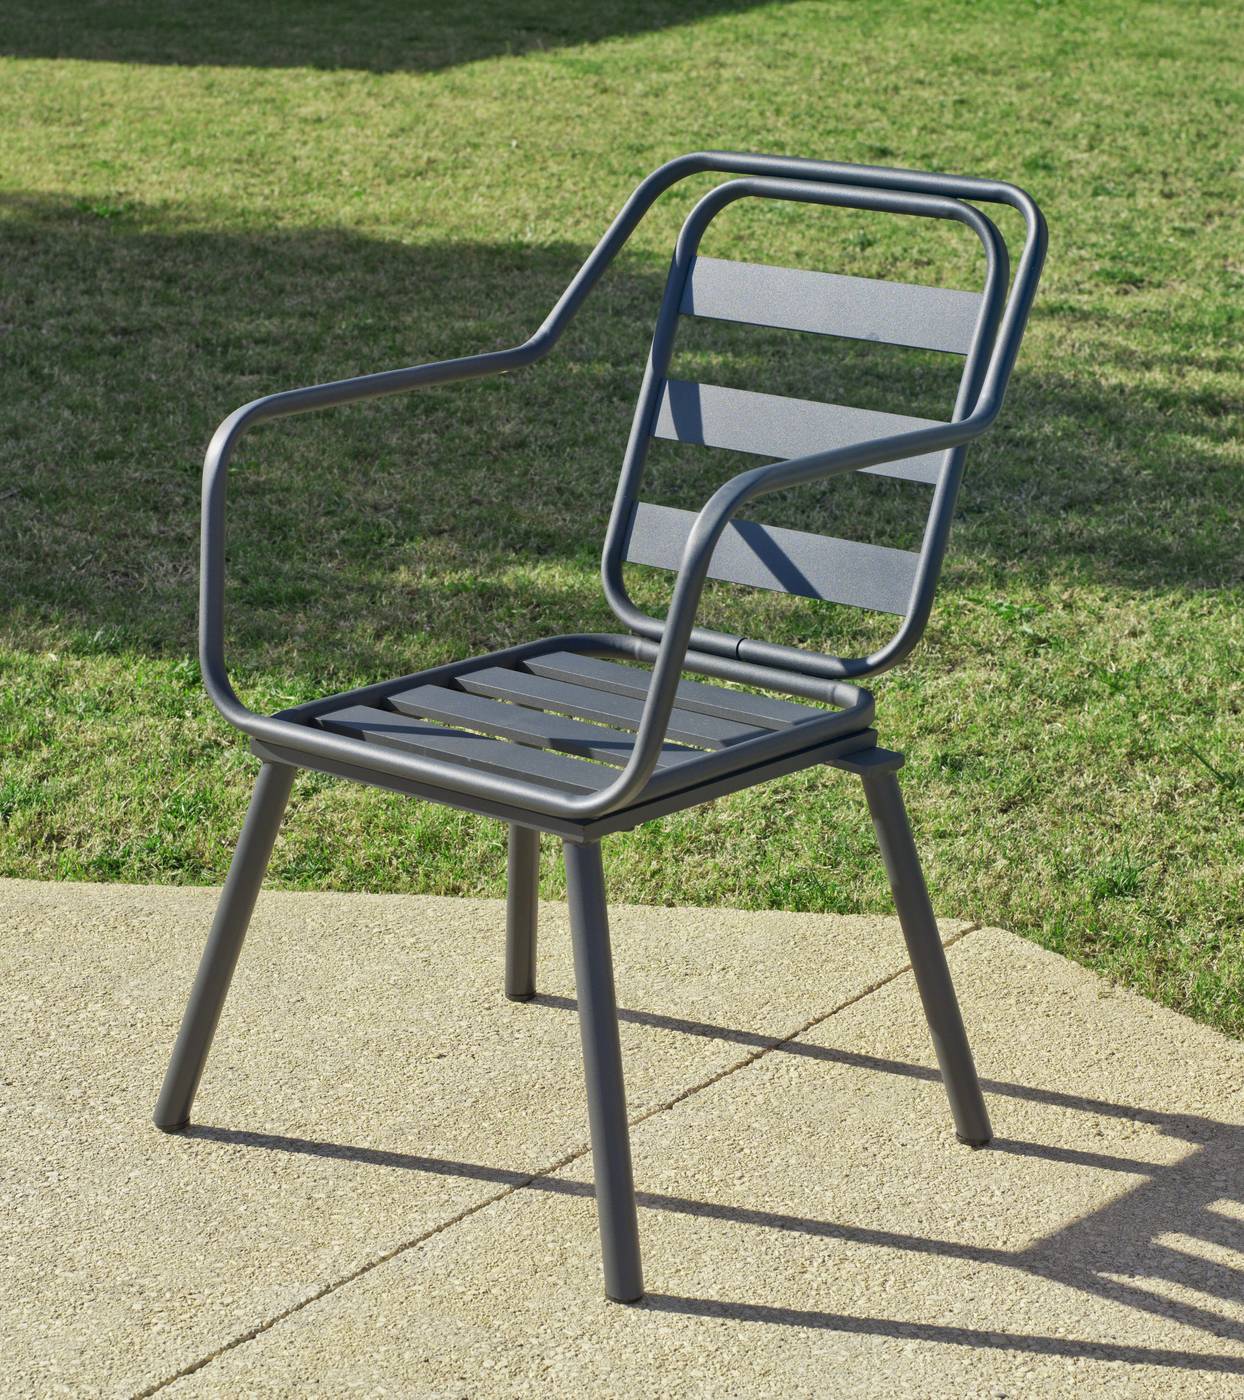 Set Aluminio Palma-Minerva 200-6 - Conjunto aluminio luxe: mesa rectangular de 200 cm. + 6 sillones. Disponible en color blanco y color antracita.